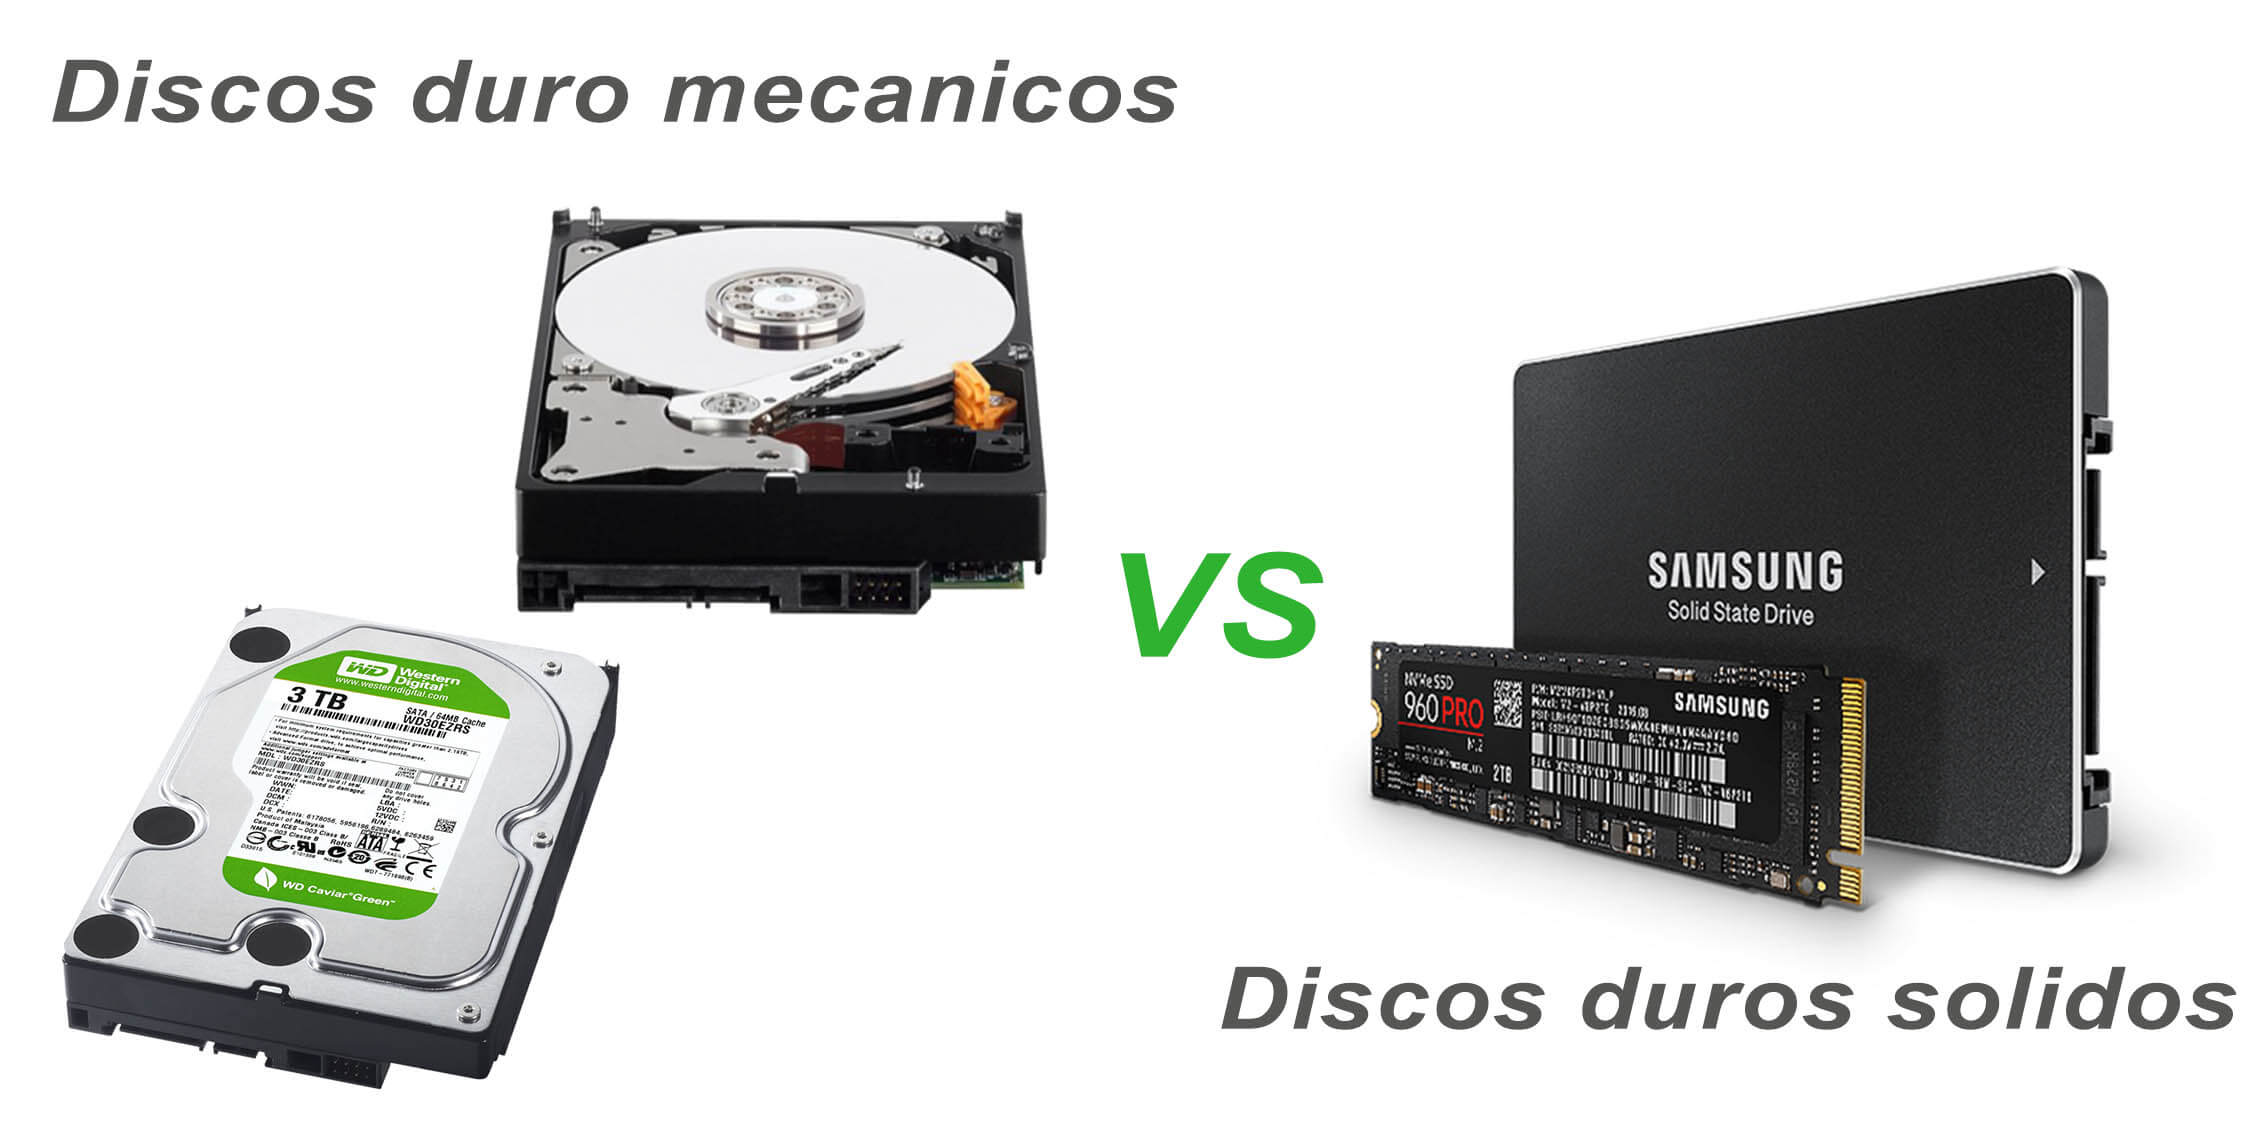 Discos duros solidos vs discos duros mecanicos, aumentar la velocidad del ordenador